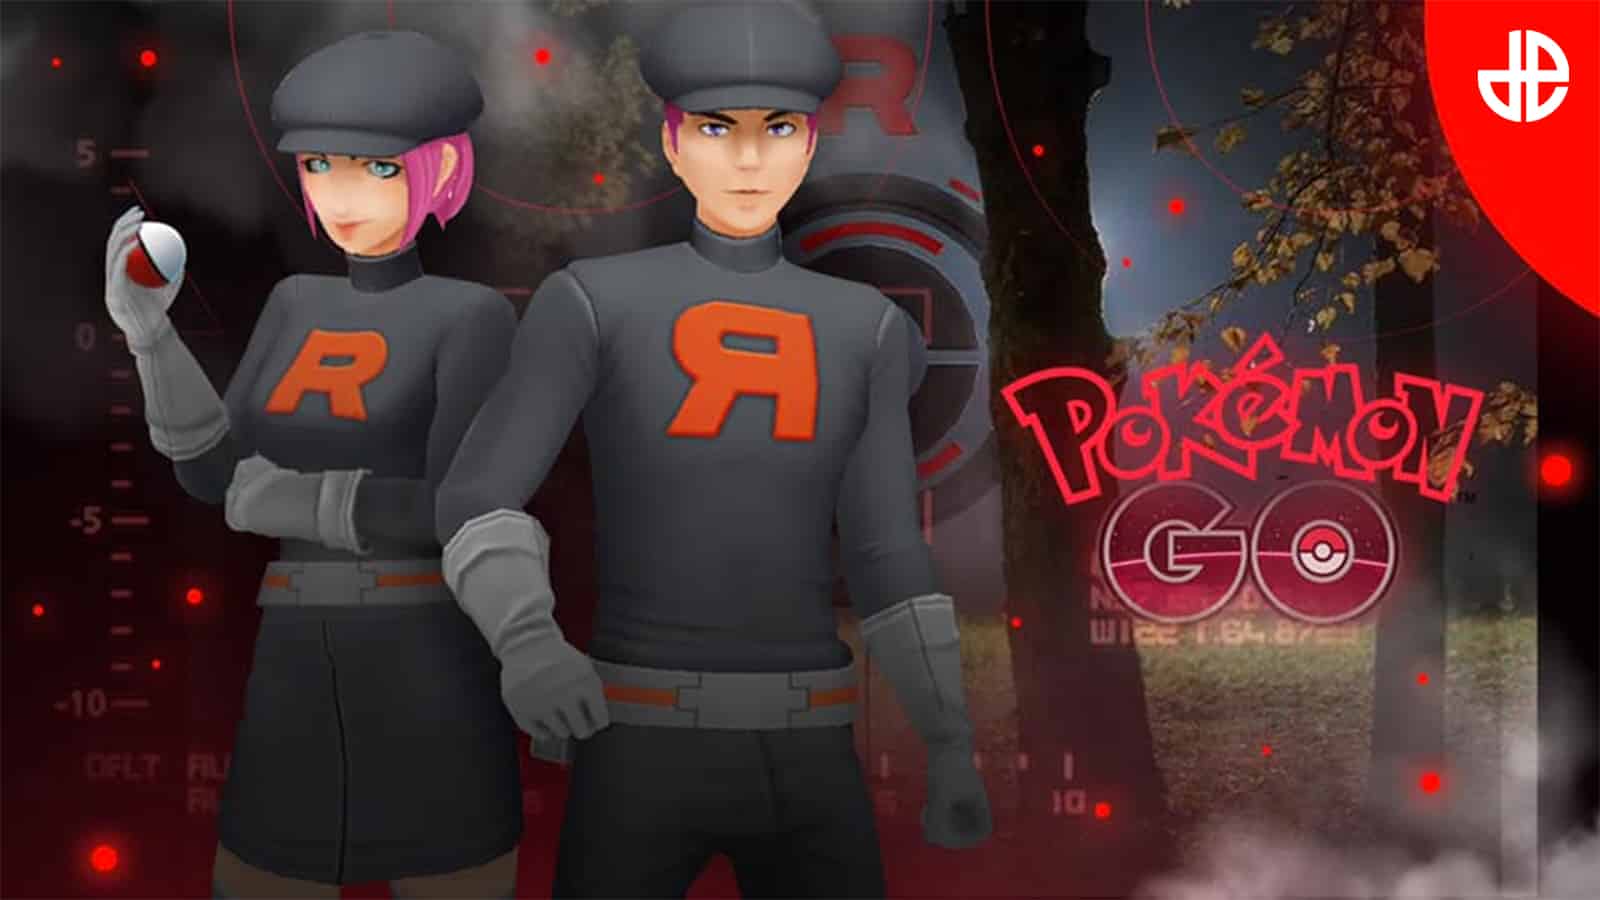 Pokémon Go - Lista dos counters de Giovanni e counters de Sierra, Arlo e  Cliff